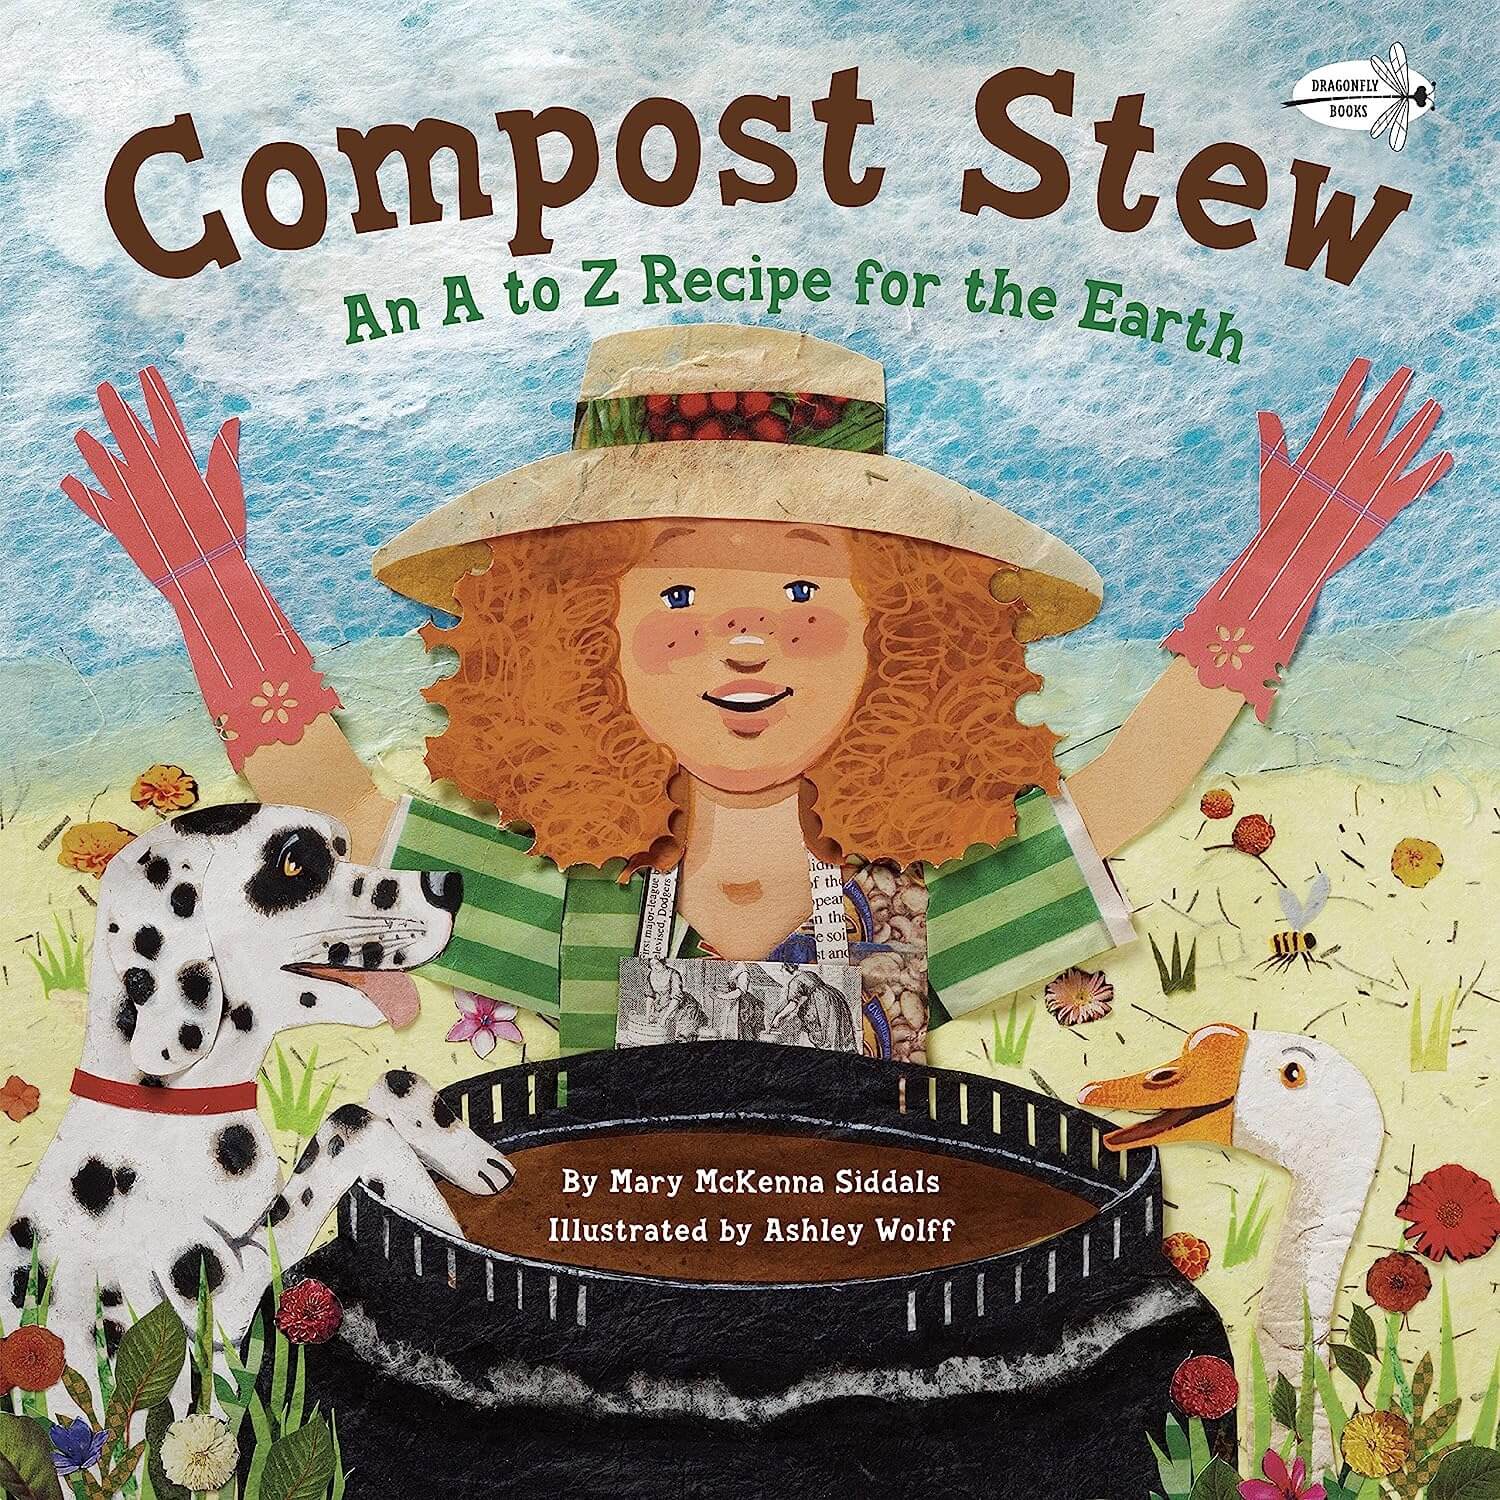 Compost stew by Mary McKenna Siddals 